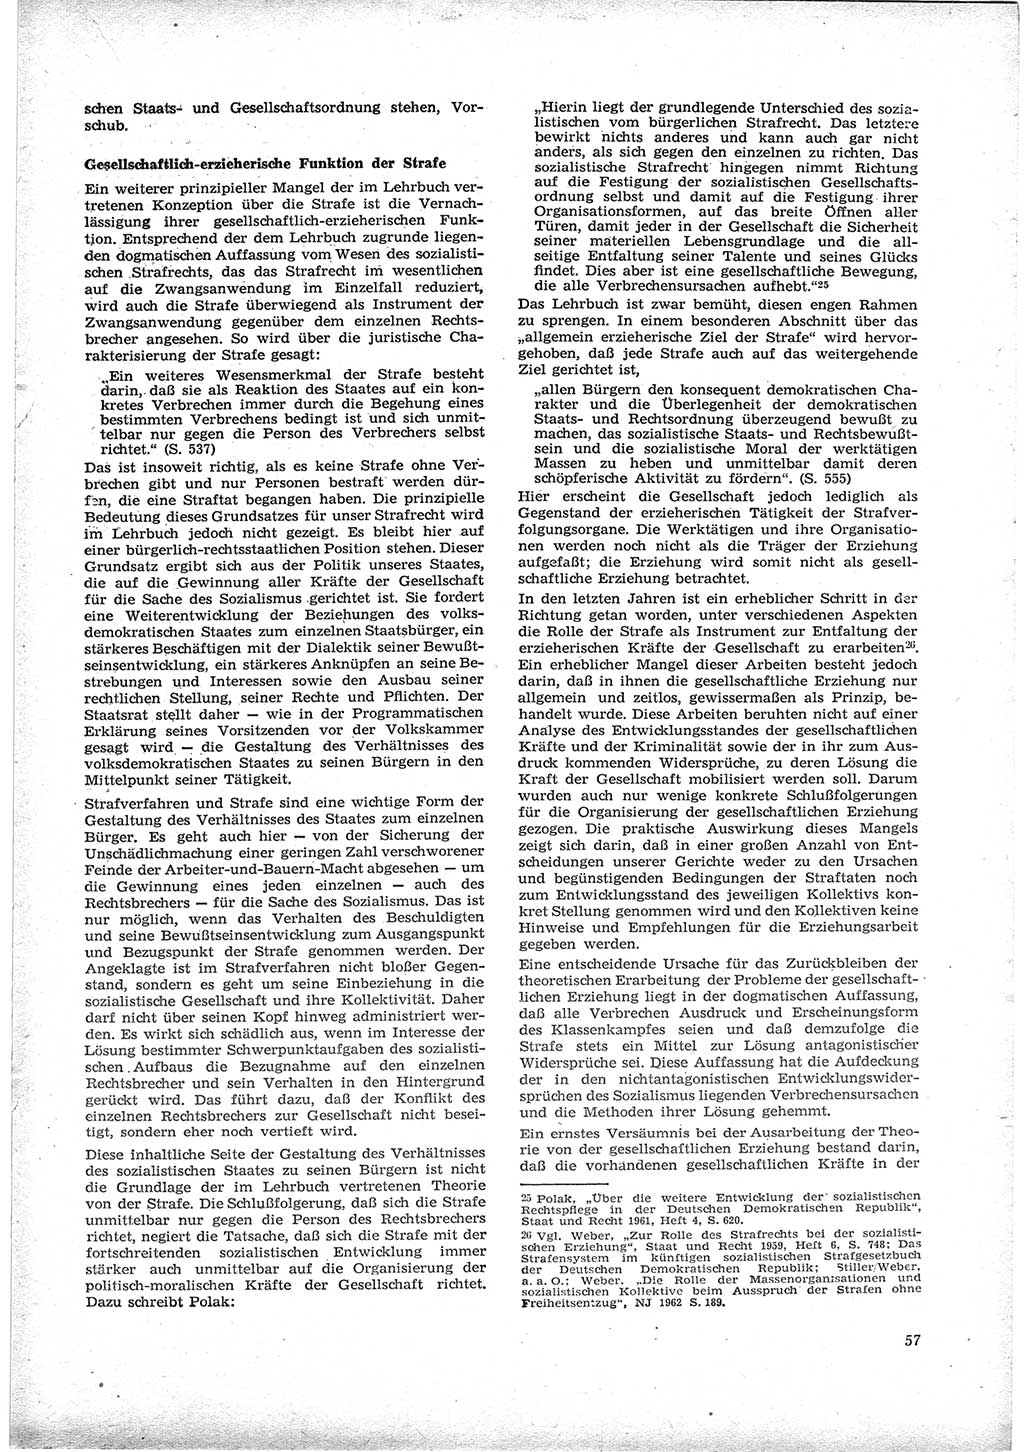 Neue Justiz (NJ), Zeitschrift für Recht und Rechtswissenschaft [Deutsche Demokratische Republik (DDR)], 17. Jahrgang 1963, Seite 57 (NJ DDR 1963, S. 57)